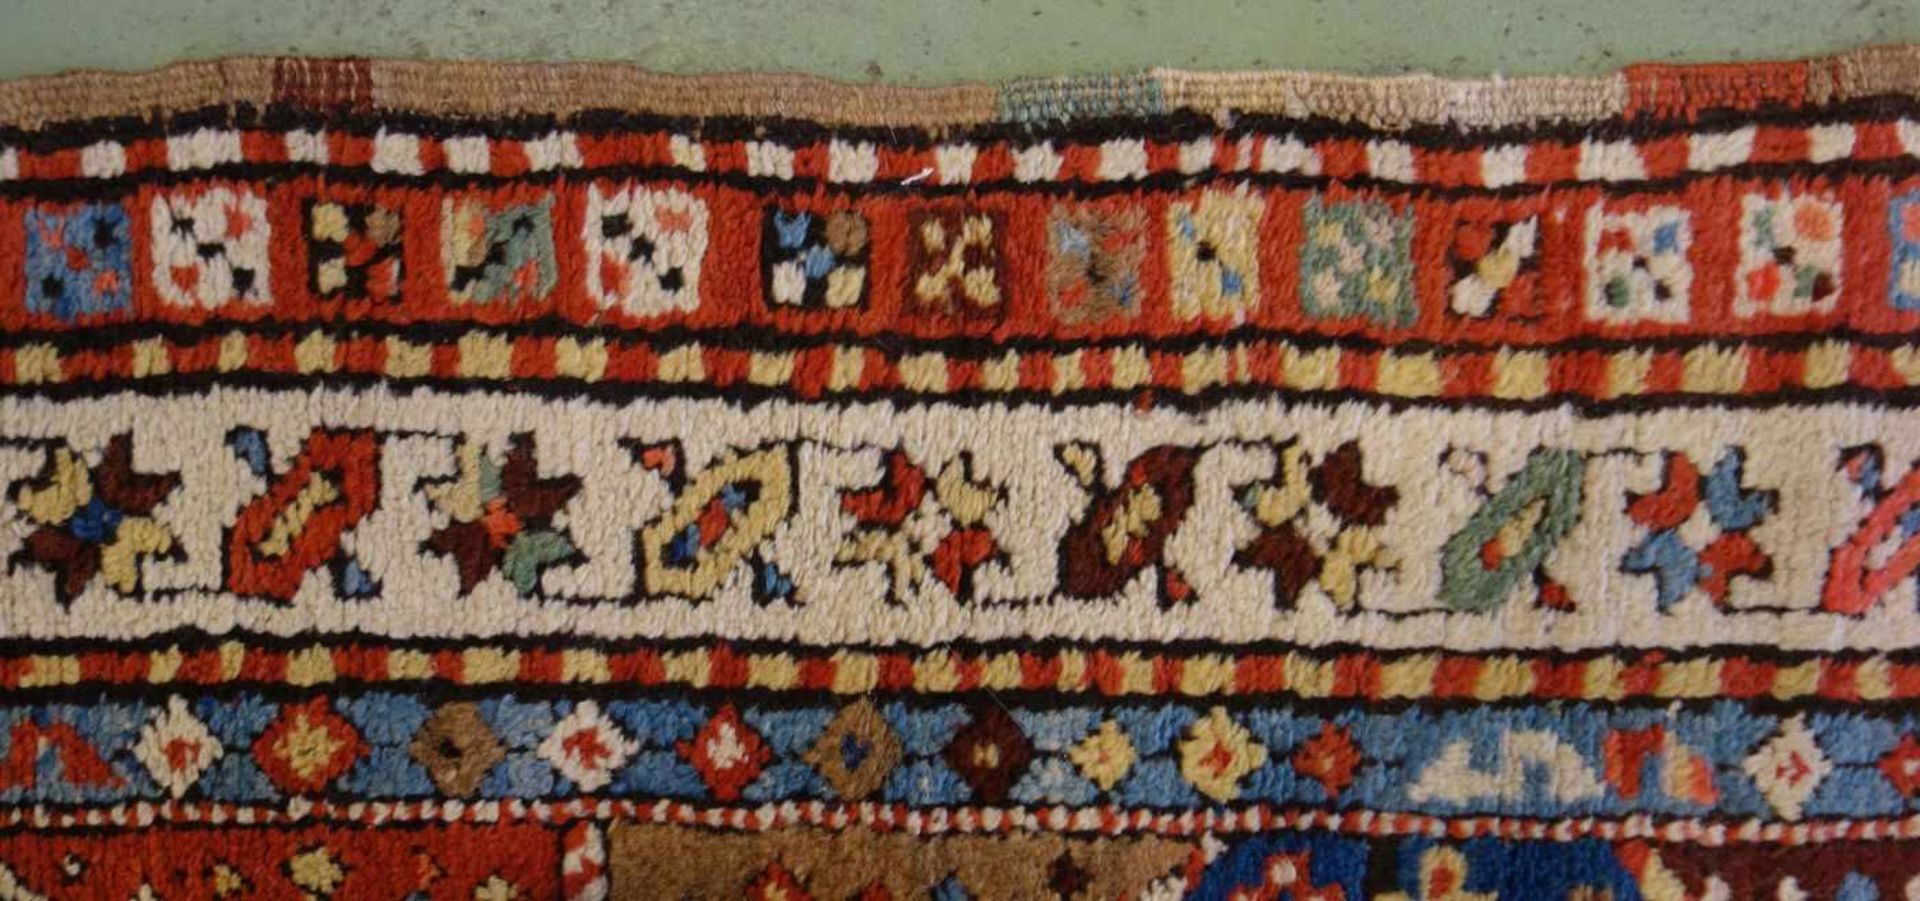 KAUKASISCHER MEDAILLONTEPPICH / carpet, wohl 19. Jh., Kaukasus / Schulaver-Kasak (Schulaver- - Image 11 of 13